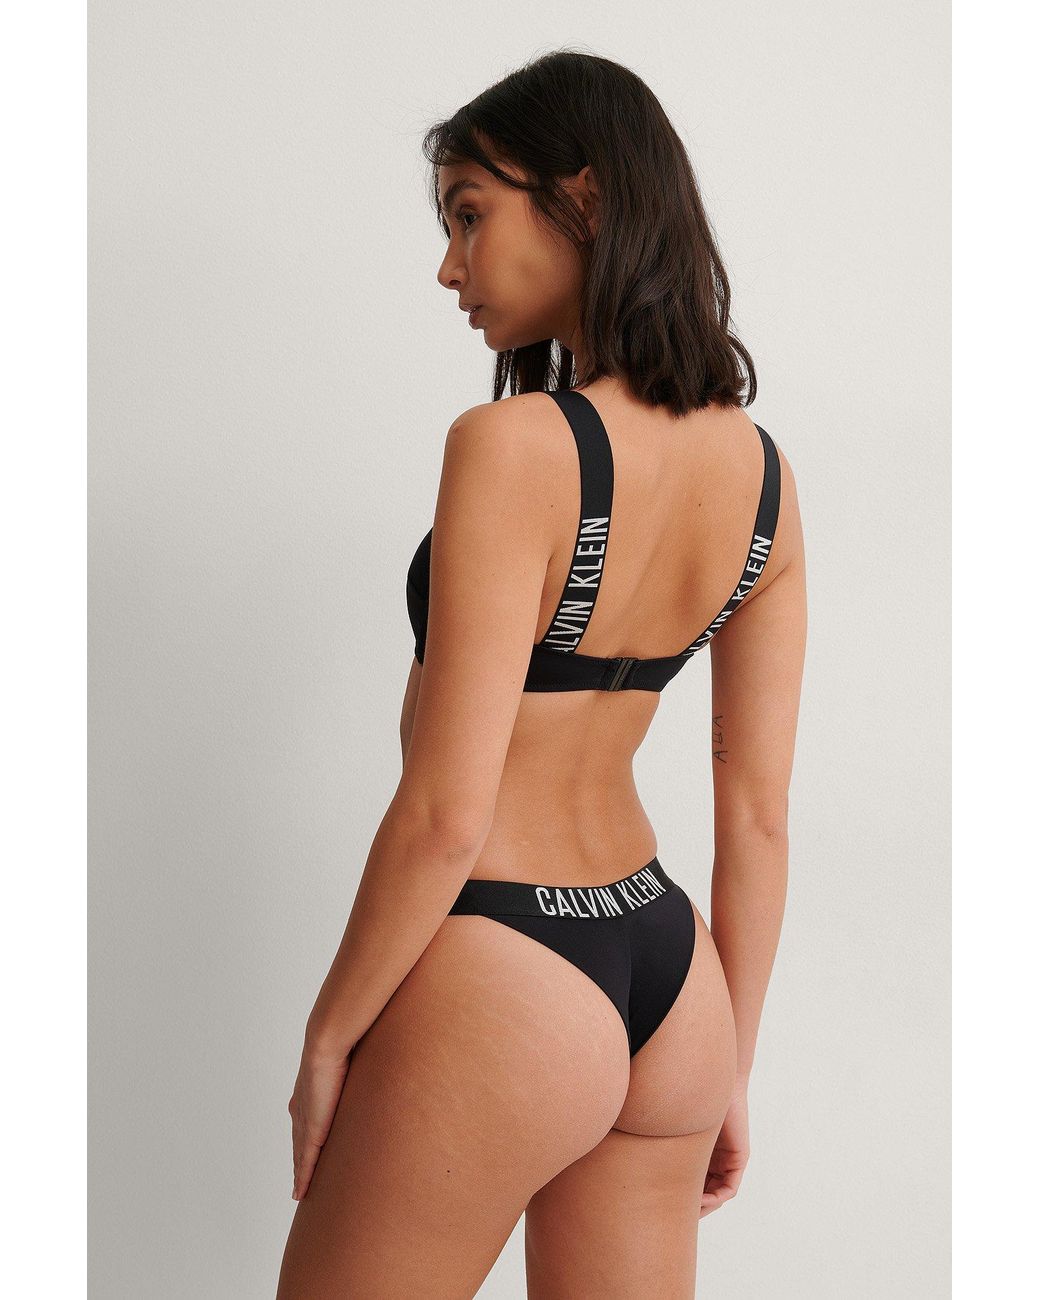 Femme Vêtements Articles de plage et maillots de bain Bikinis et maillots de bain Bas de maillot Synthétique Calvin Klein en coloris Blanc 